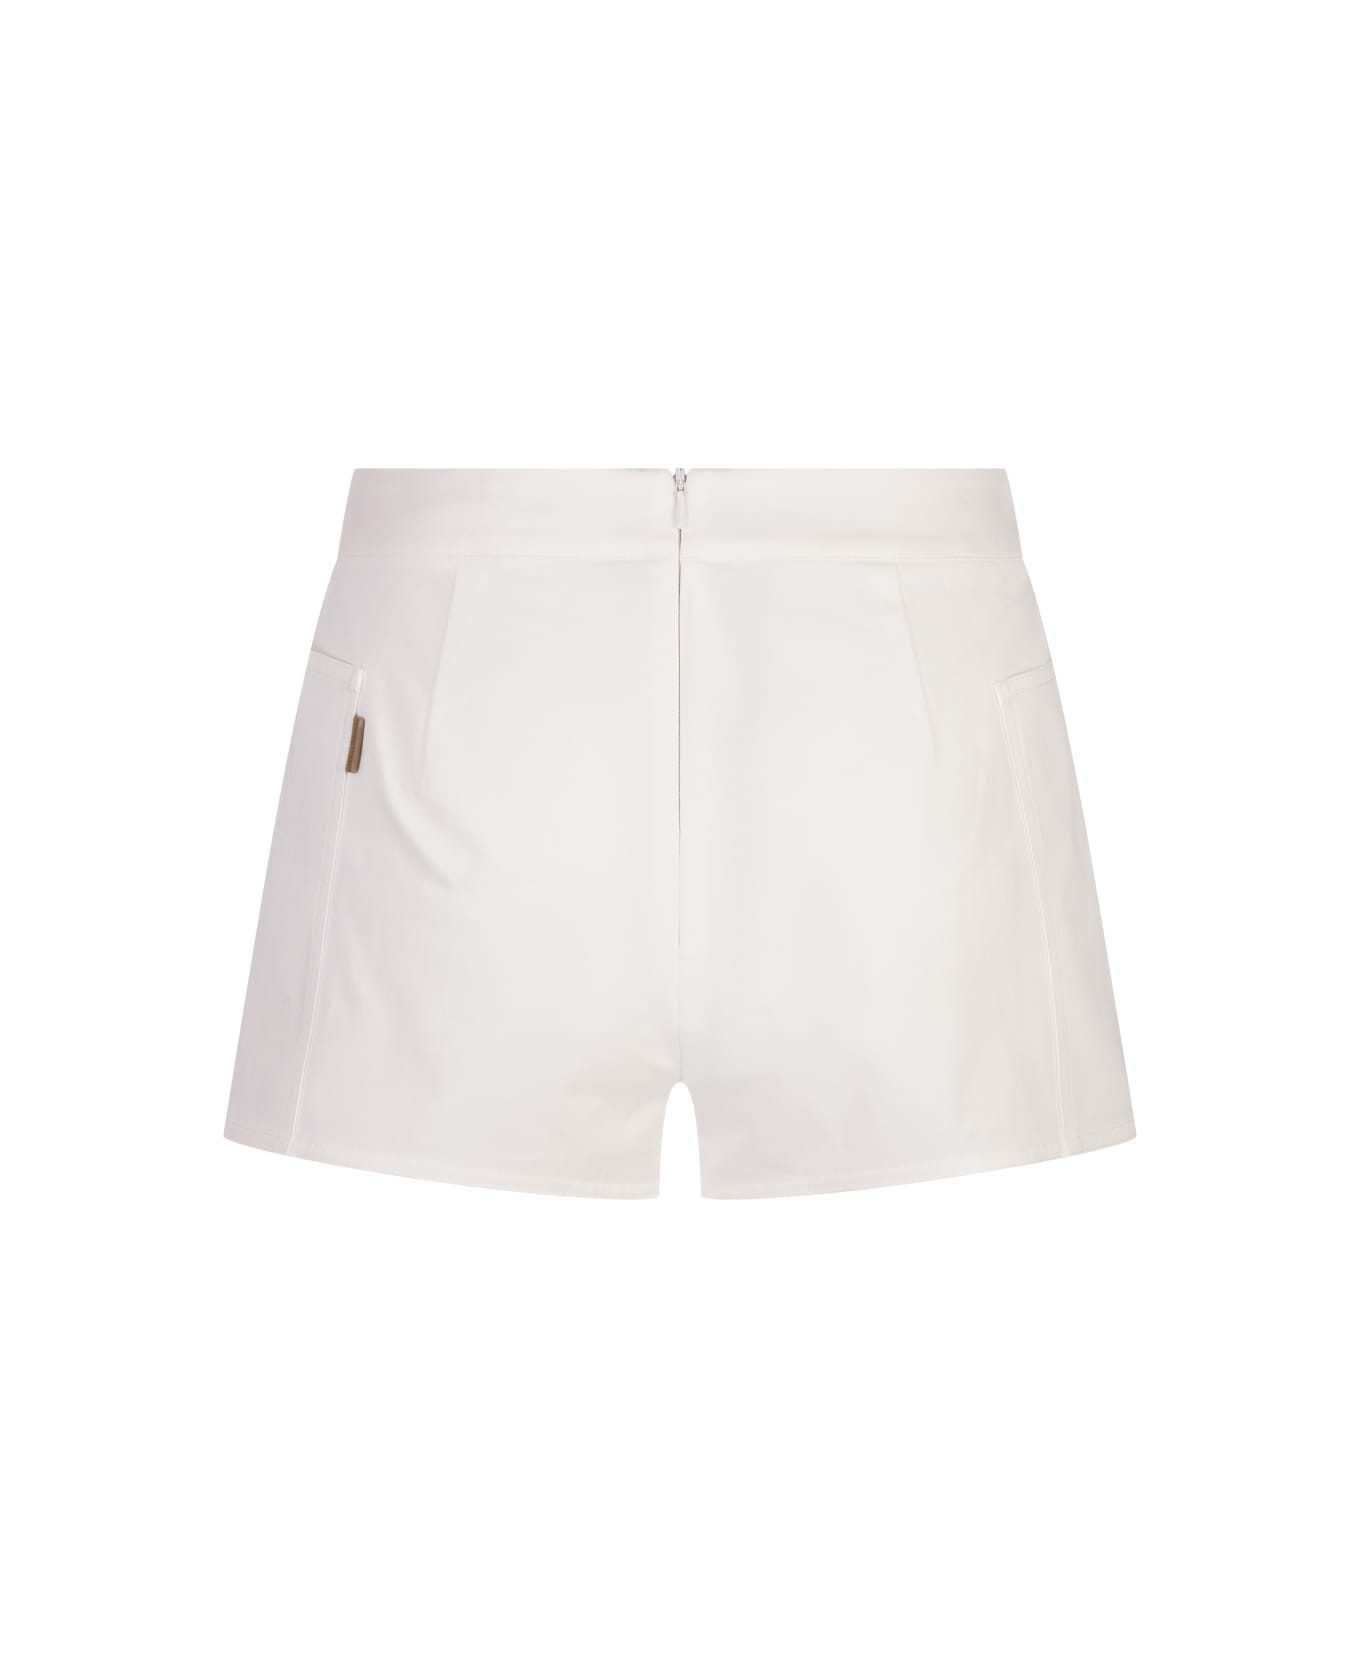 Max Mara White Riad Shorts - White ショートパンツ